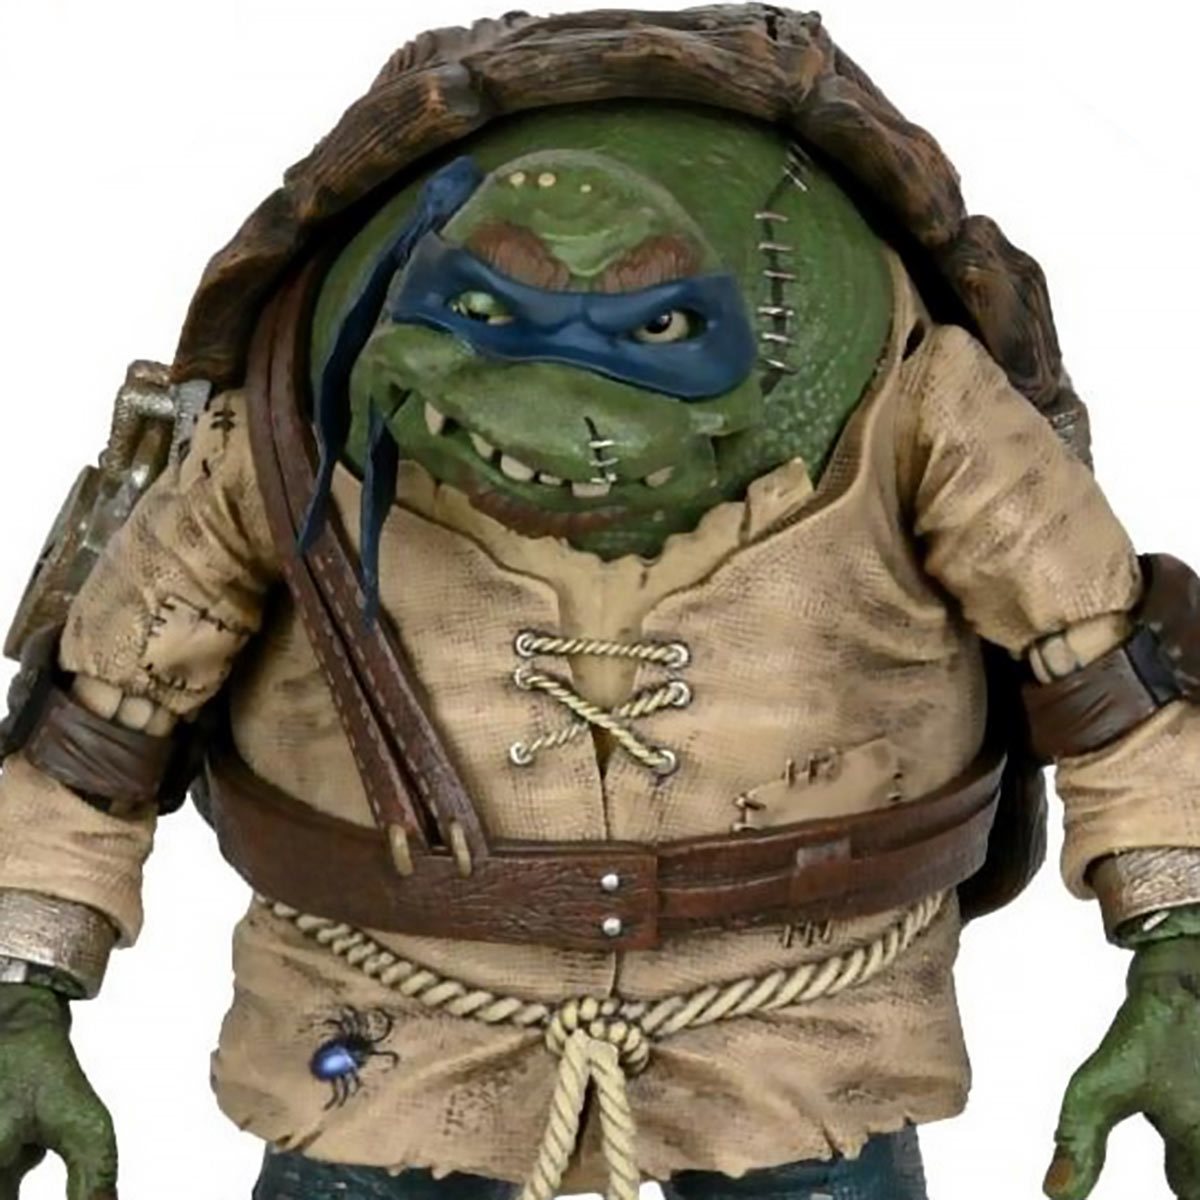 Universal Monsters x Teenage Mutant Ninja Turtles Ult. Leonardo as